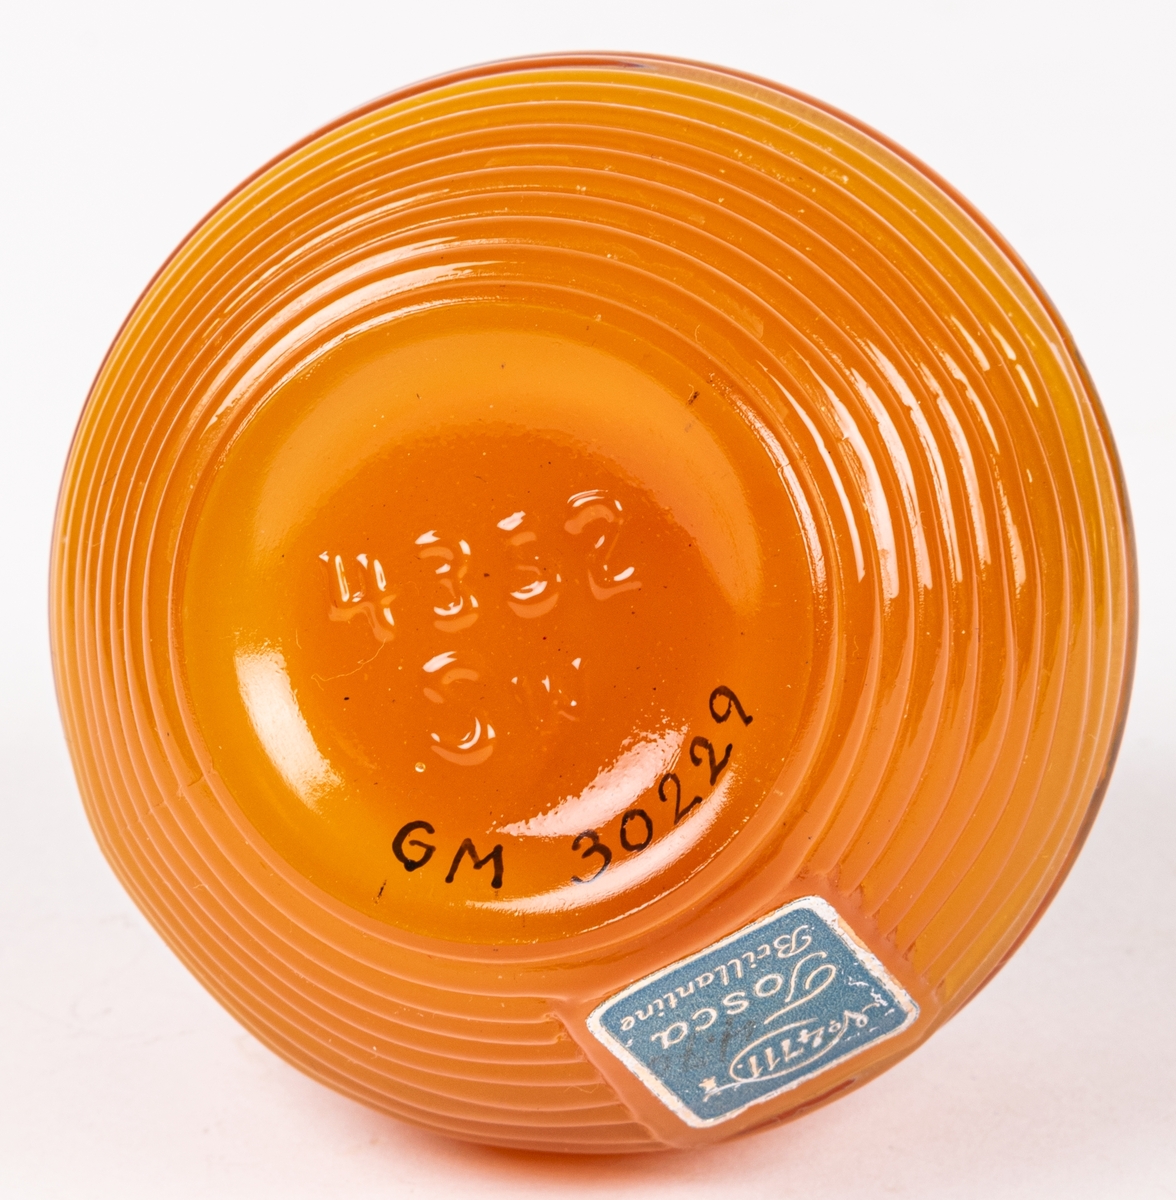 Glasburk med hårpomada (orginalförpackning). Genomskinligt glas med orangefärgad pomada. Svart lock med texten "TOSLA". På sidan en pappersetikett "4711 Tosca Brilliantine.